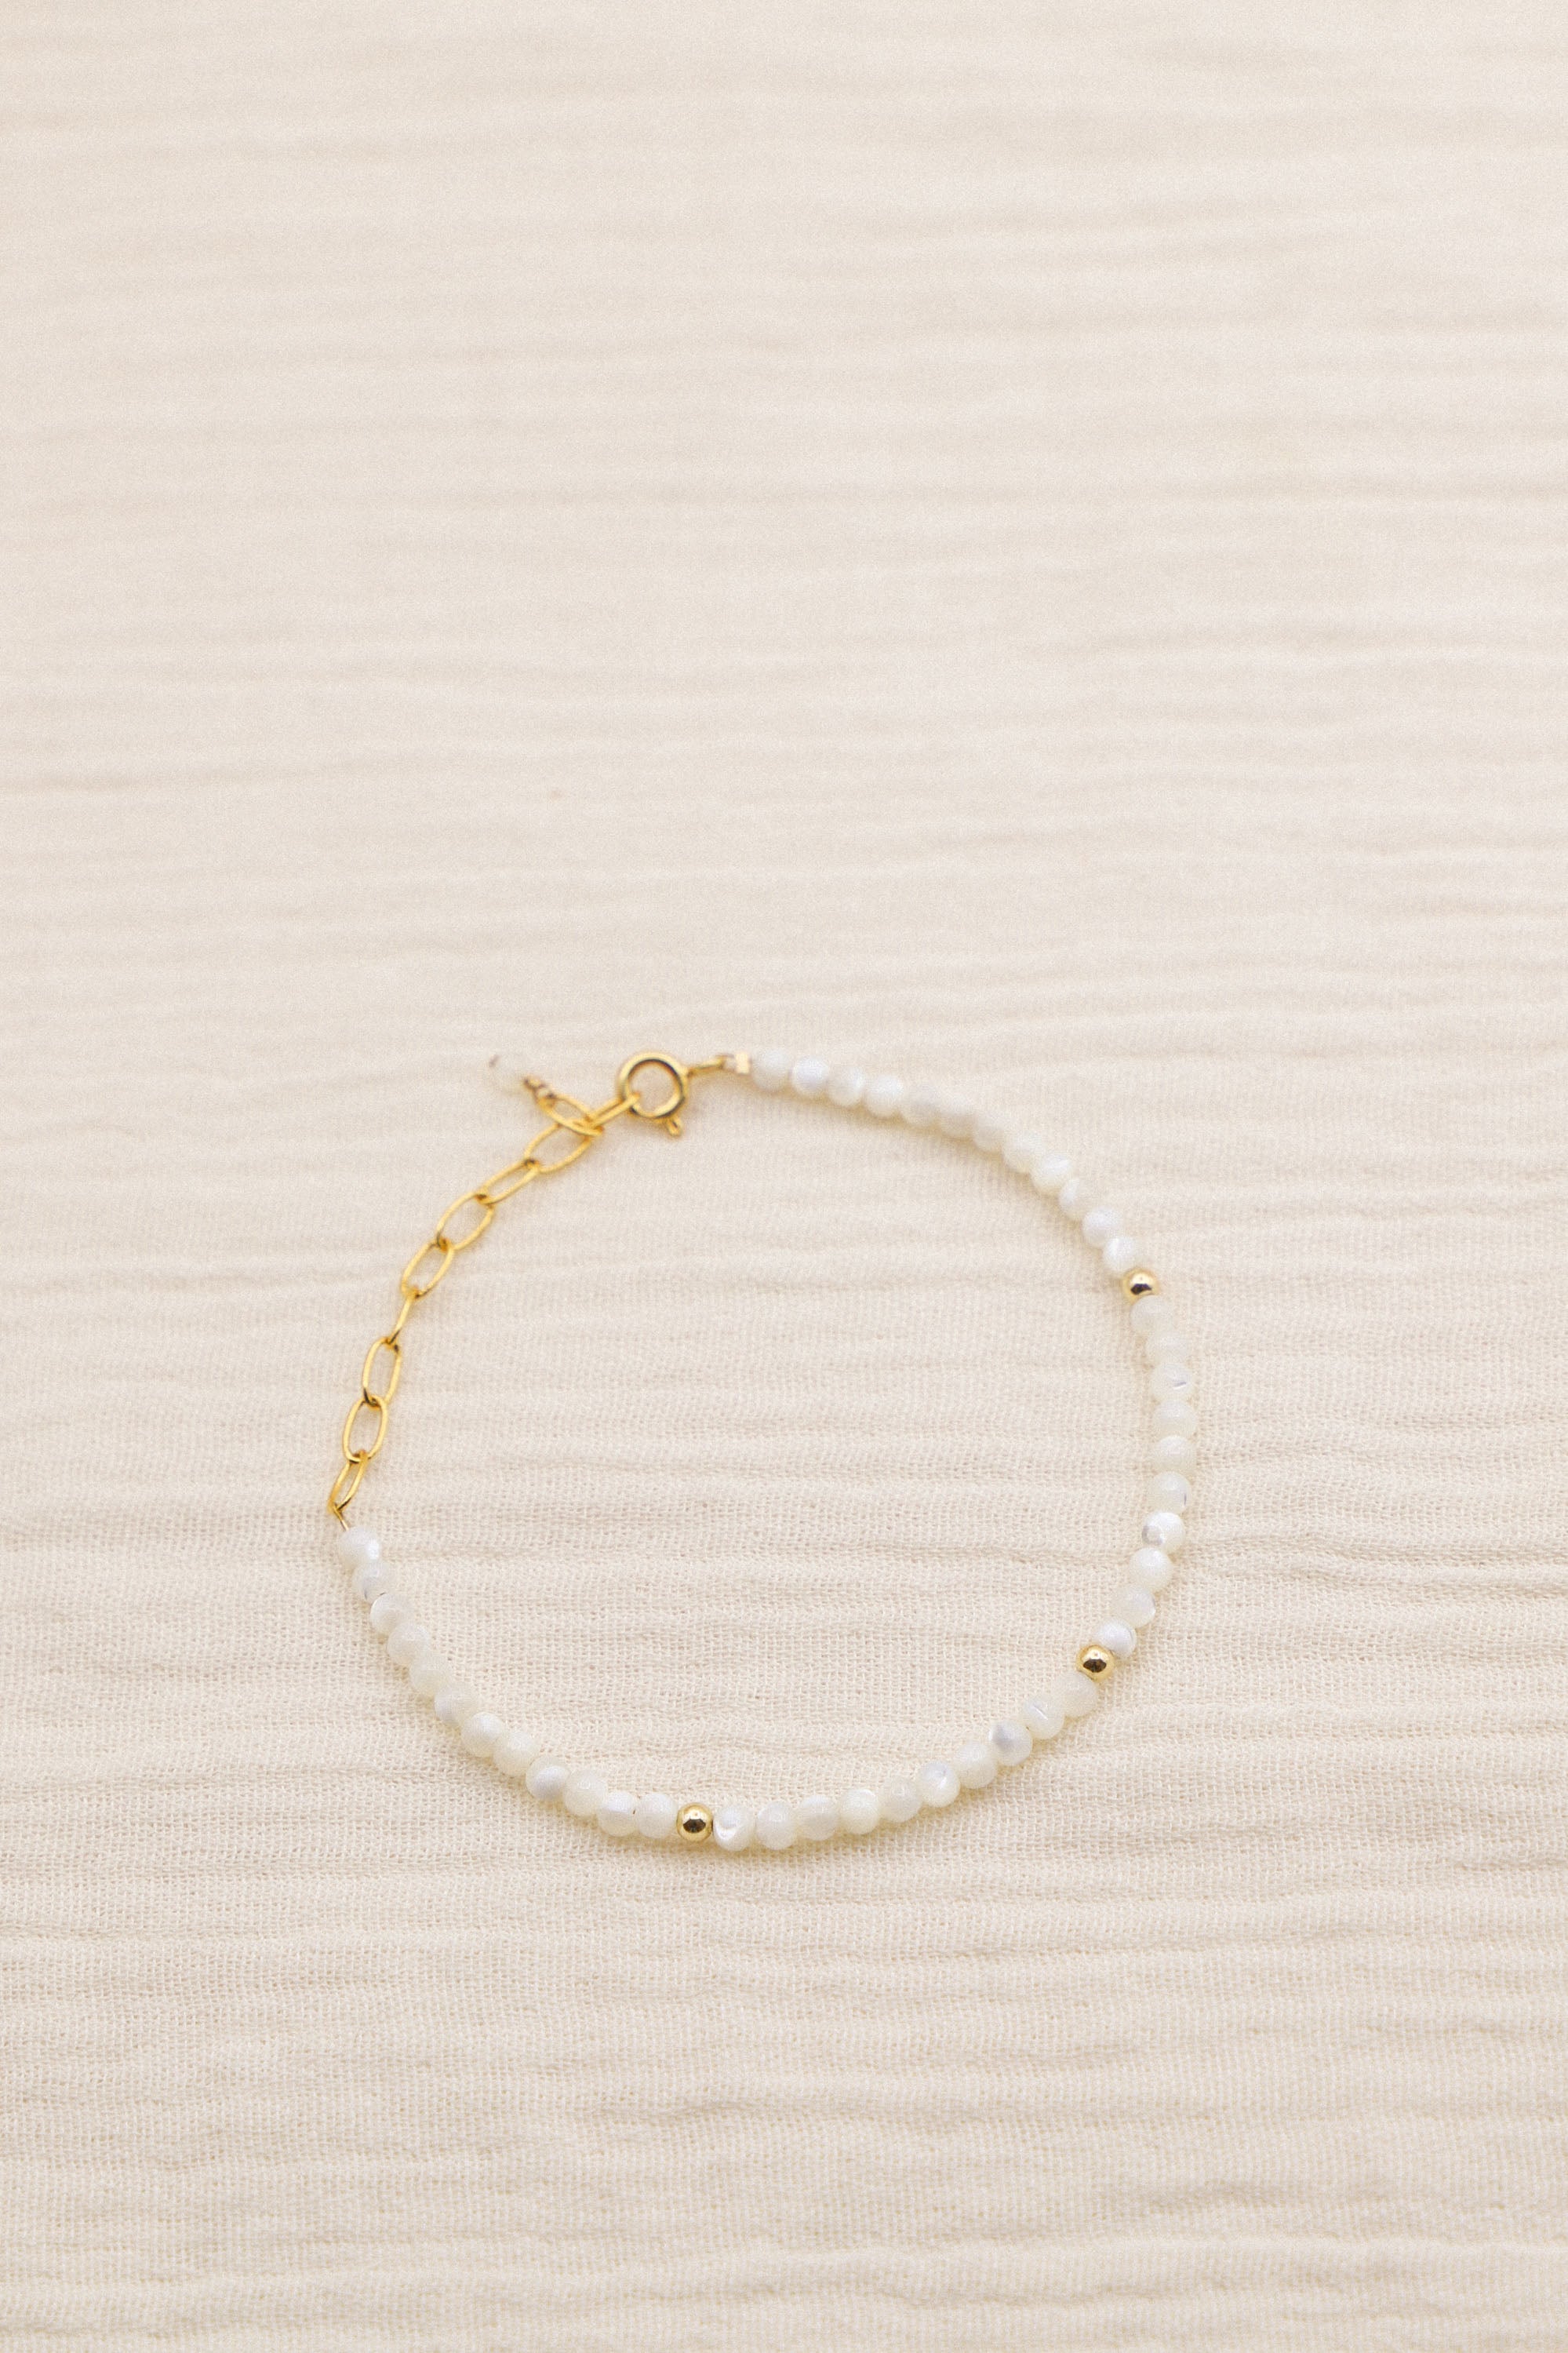 Bracelet June composé de perles blanches. Le tout, plaqué or 24 carats.